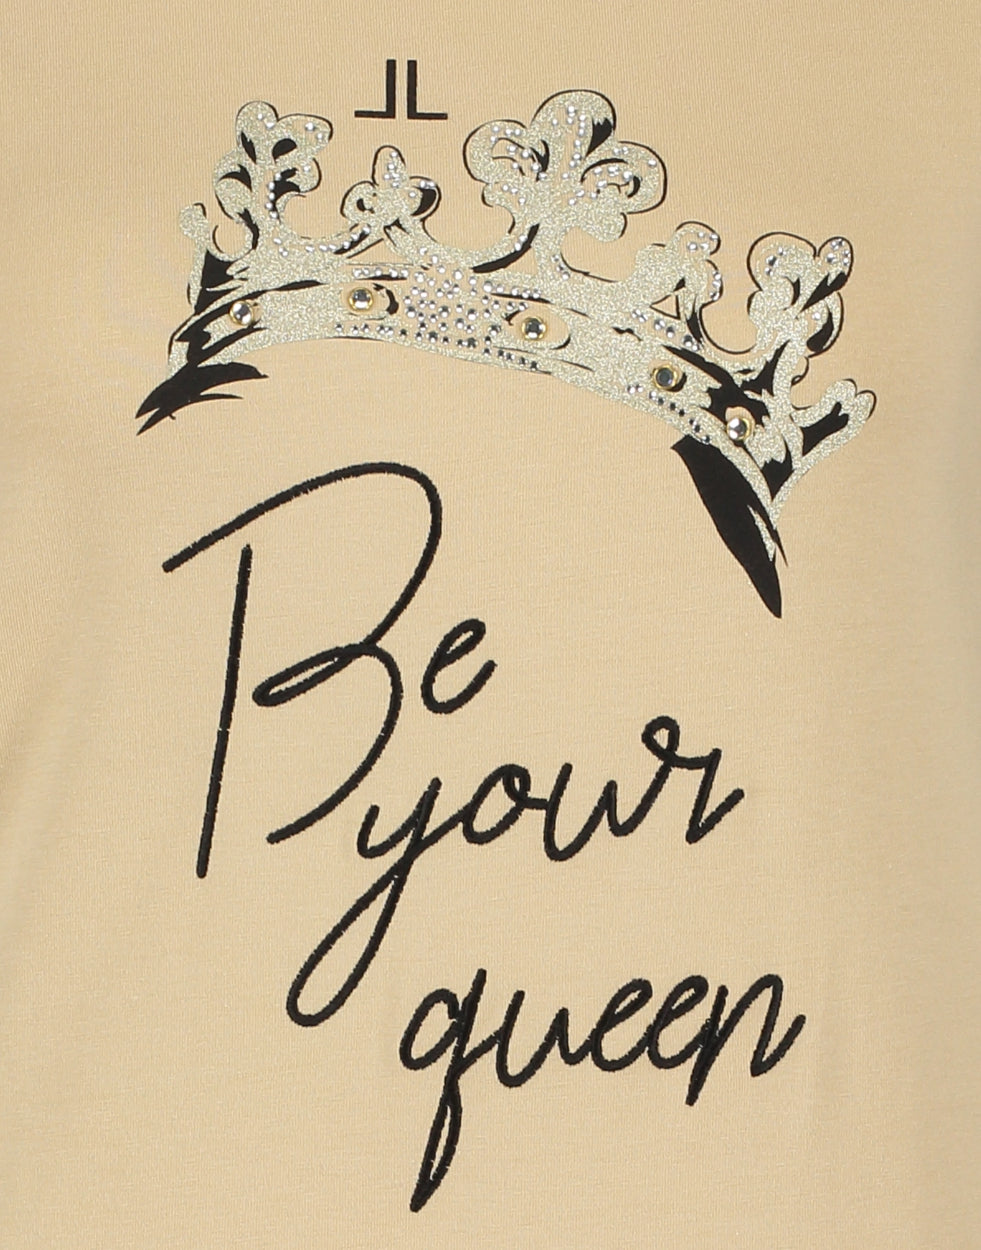 T-shirt Queen Organic Cotton | Beige